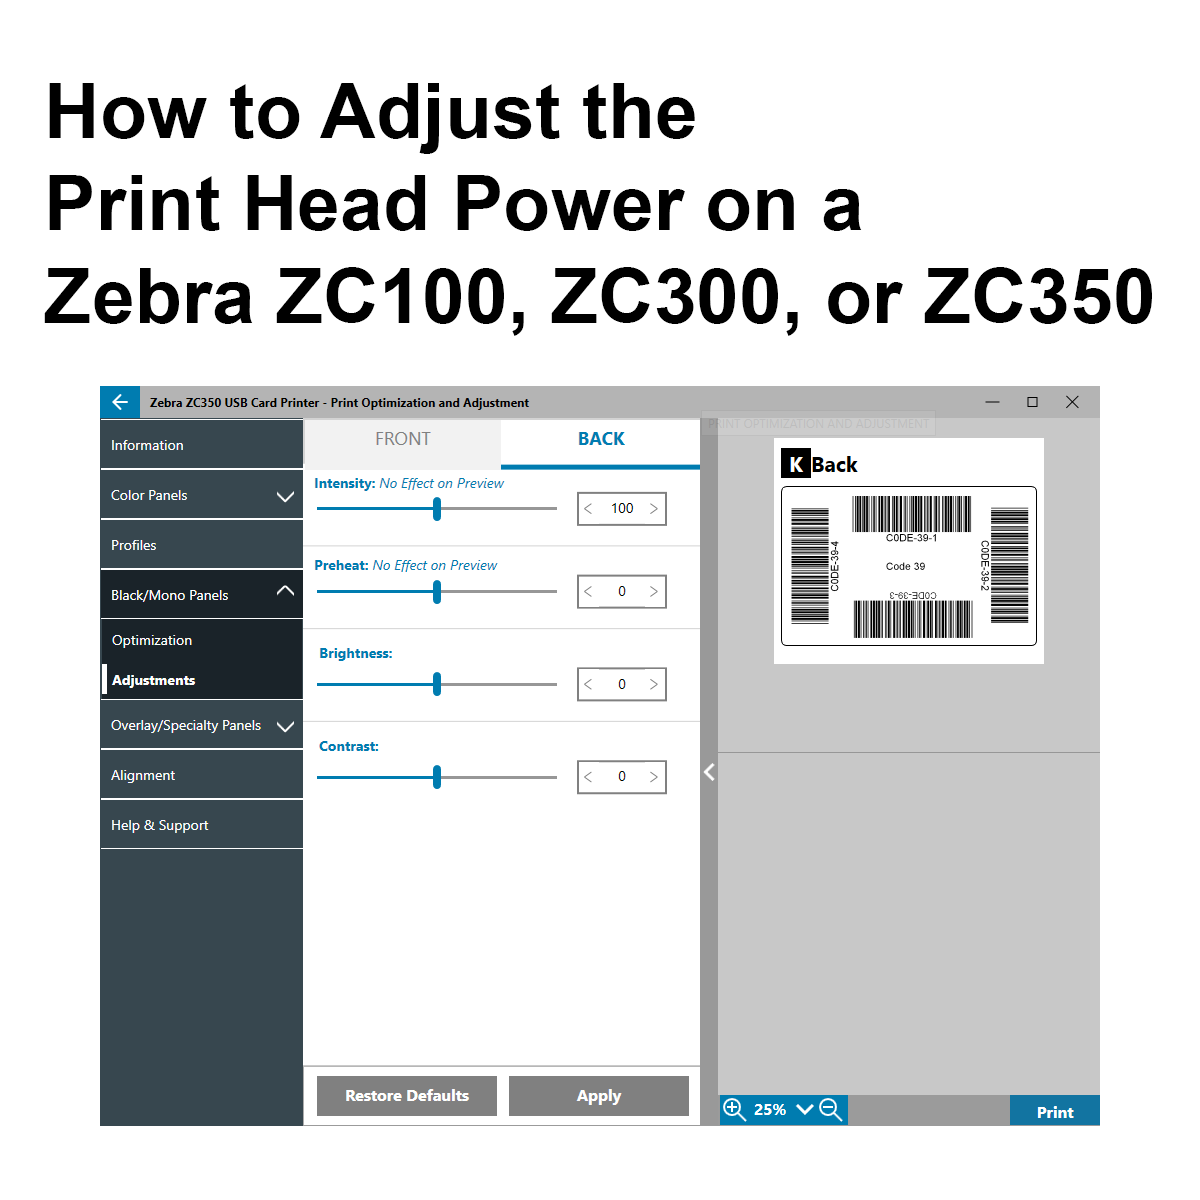 How to Adjust the Print Head Power on a Zebra ZC100, ZC300, or ZC350